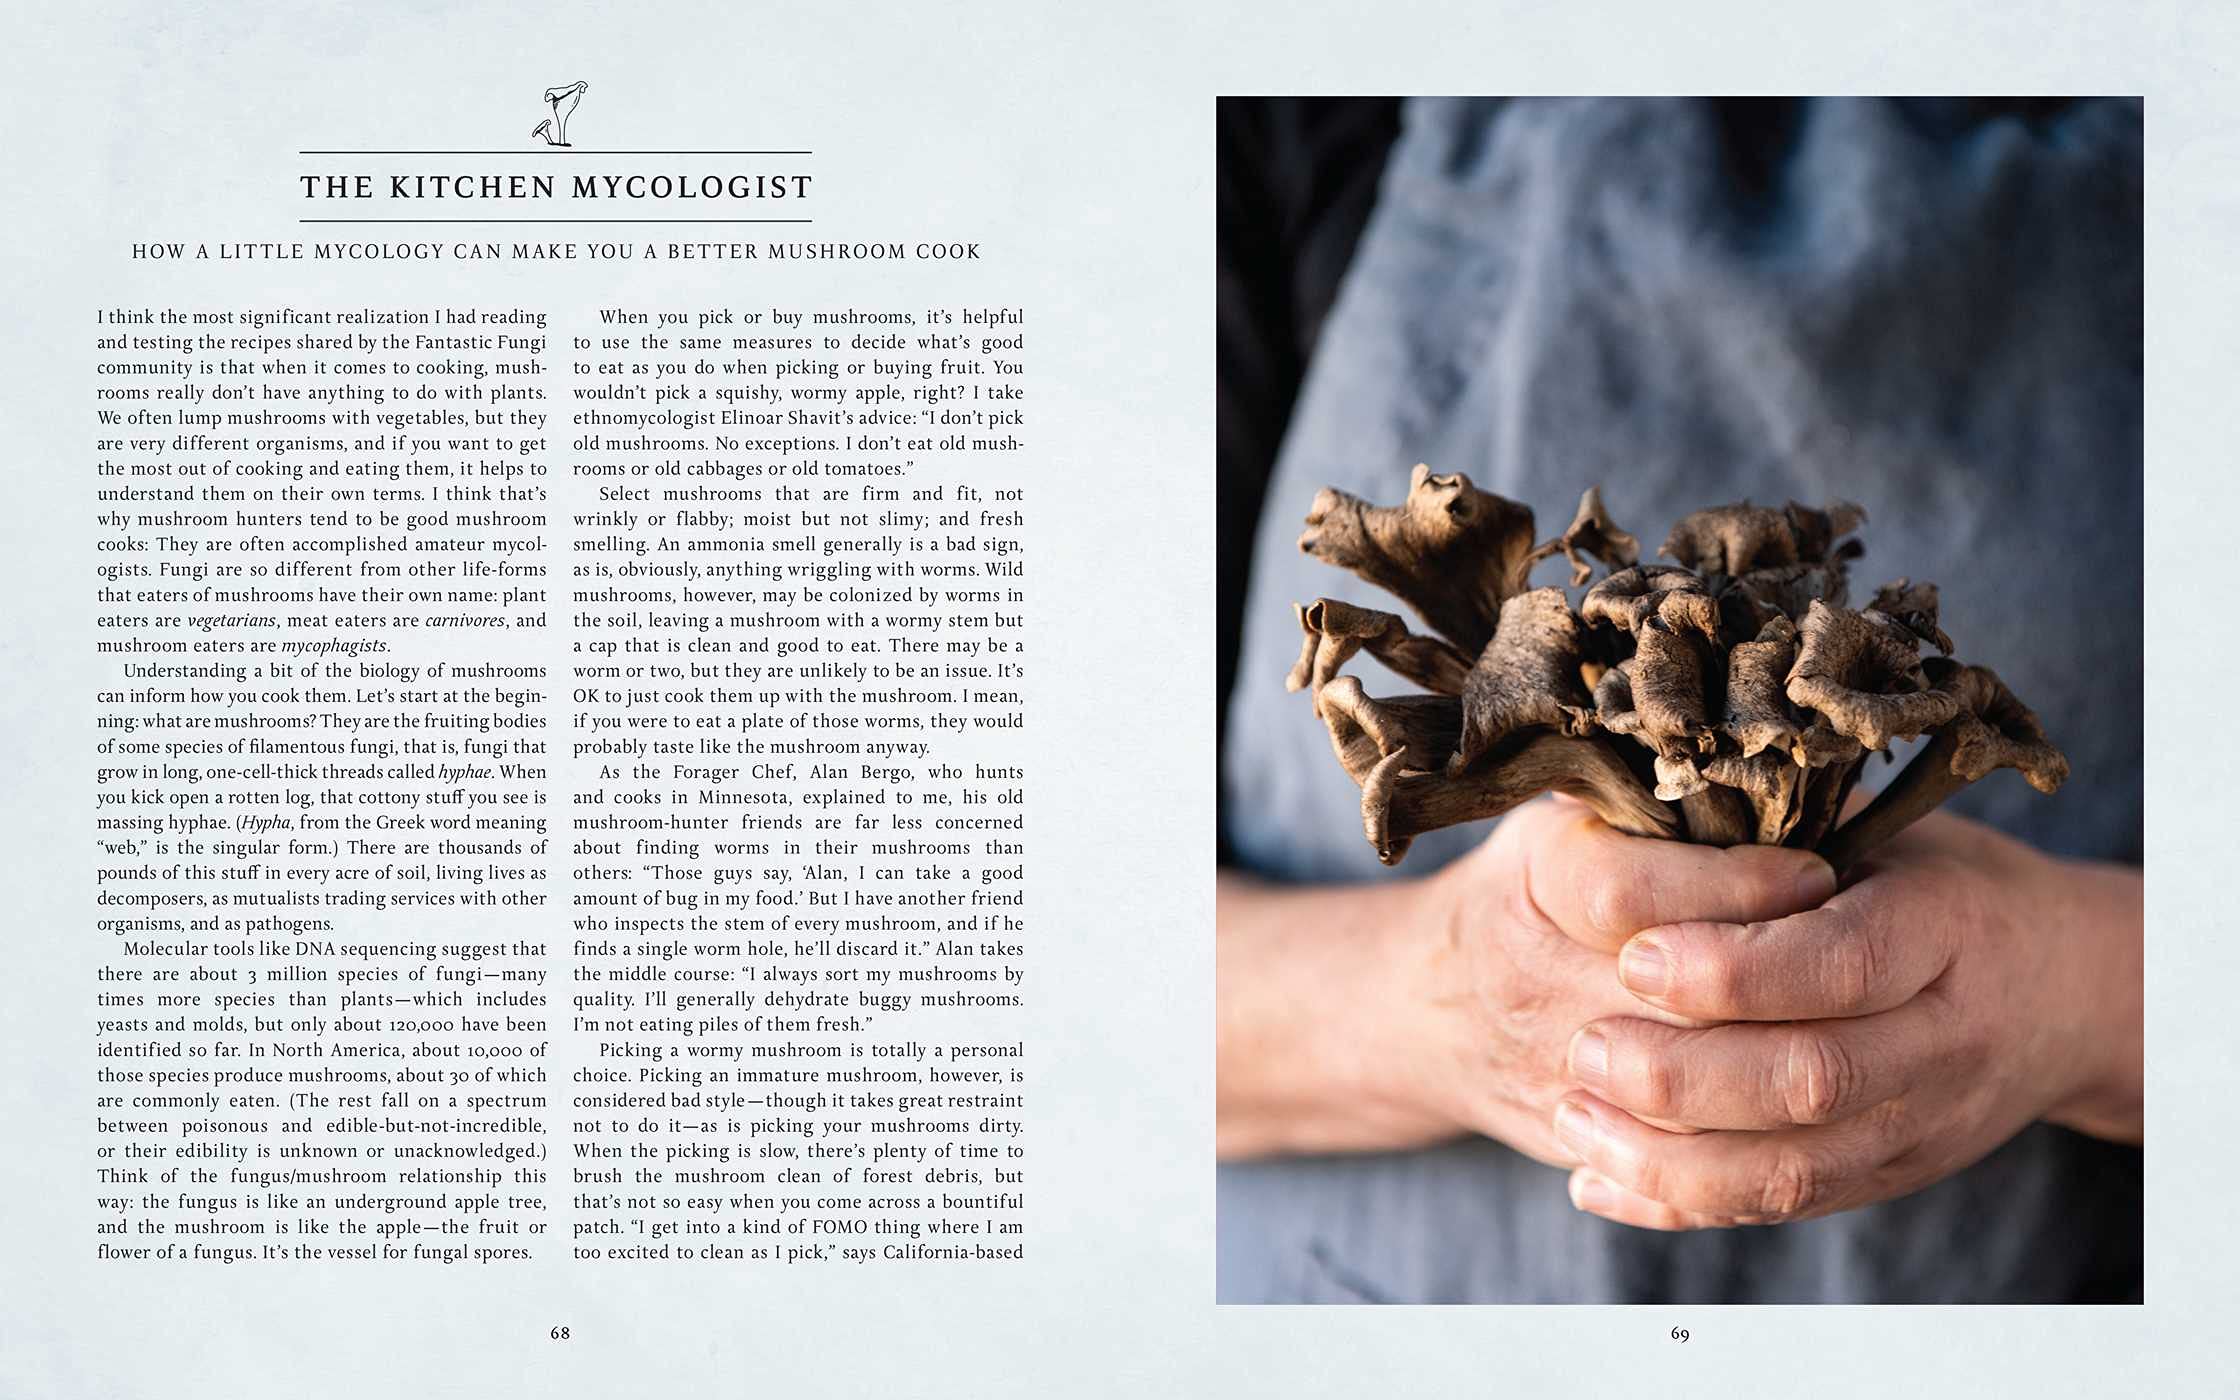 Fantastic Fungi Community Cookbook